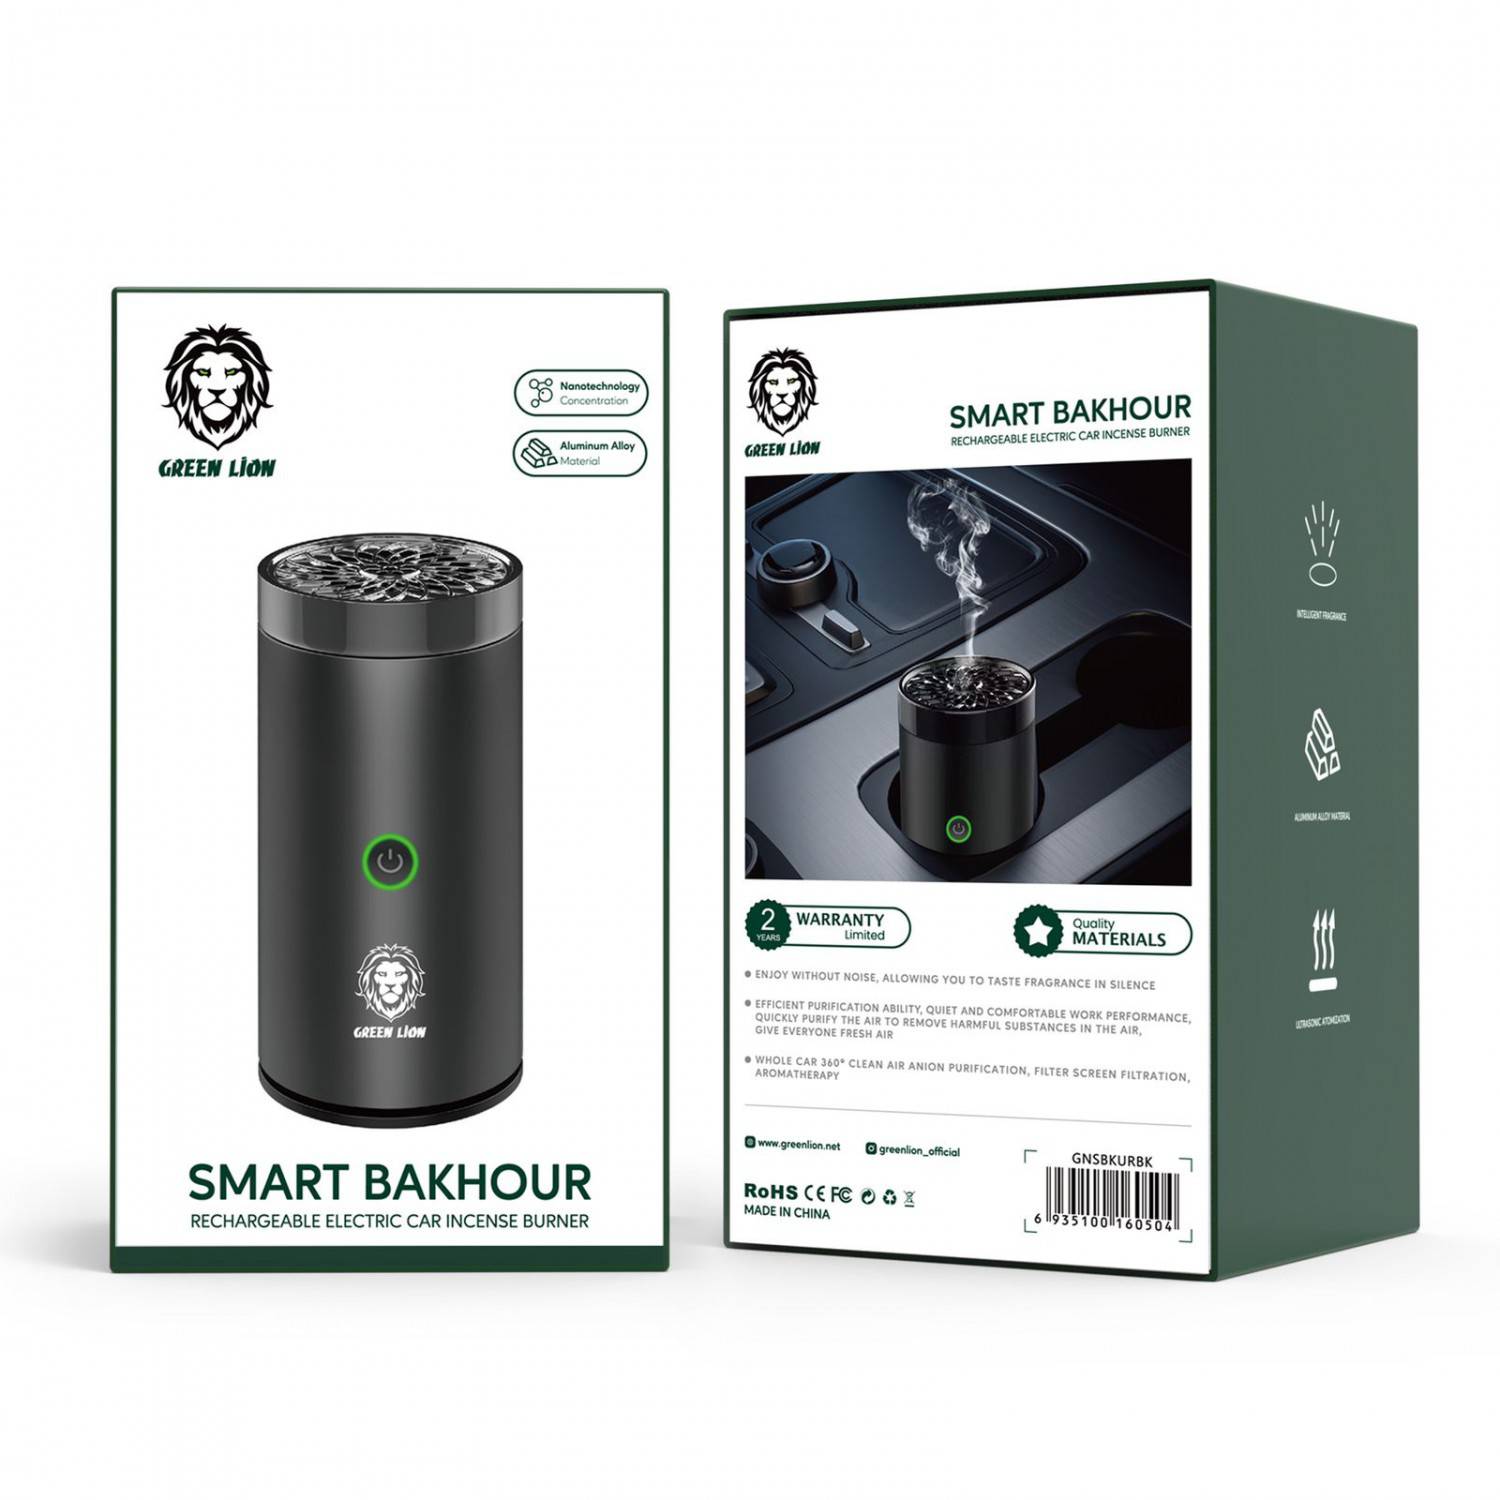 دستگاه بخور سرد شارژی هوشمند گرین لاین مدل GREEN LION SMART BAKHOUR GNSBKURBK